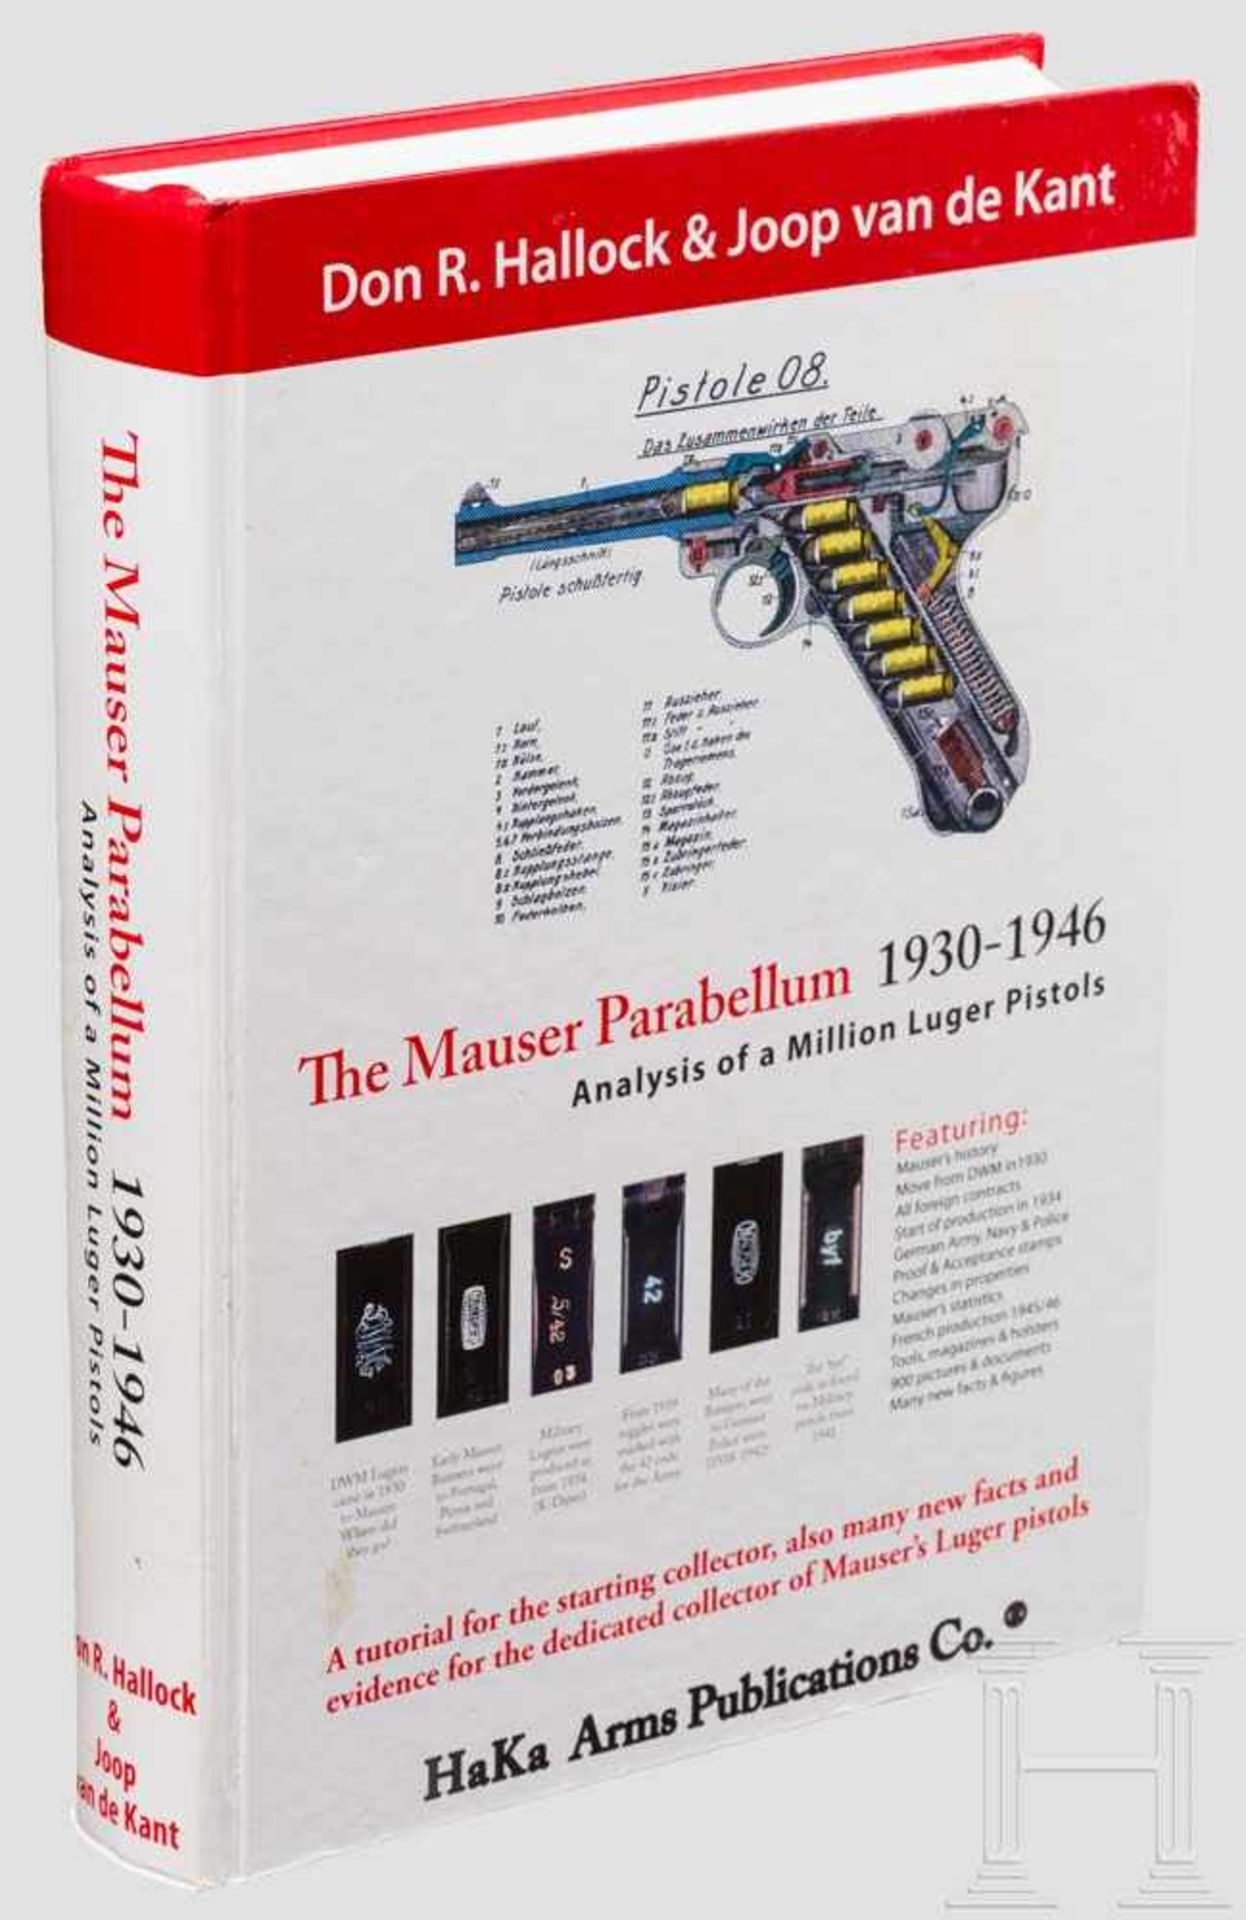 Hallock / van de Kant "The Mauser Parabellum 1930 - 1946" Neuerscheinung von 2010 mit 704 farbig